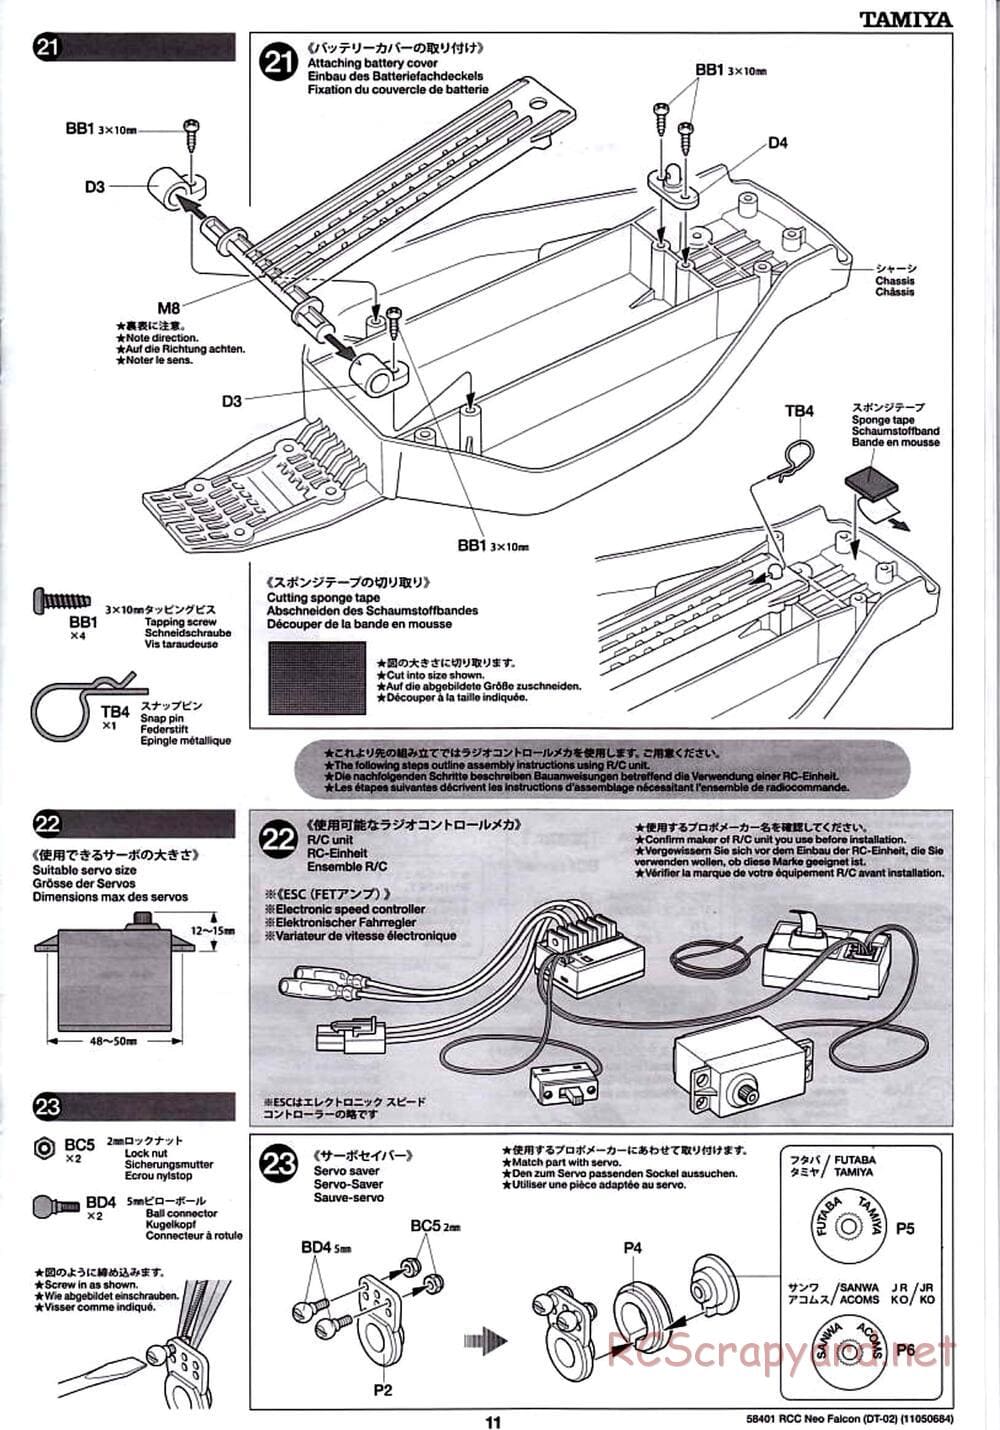 Tamiya - Neo Falcon Chassis - Manual - Page 11